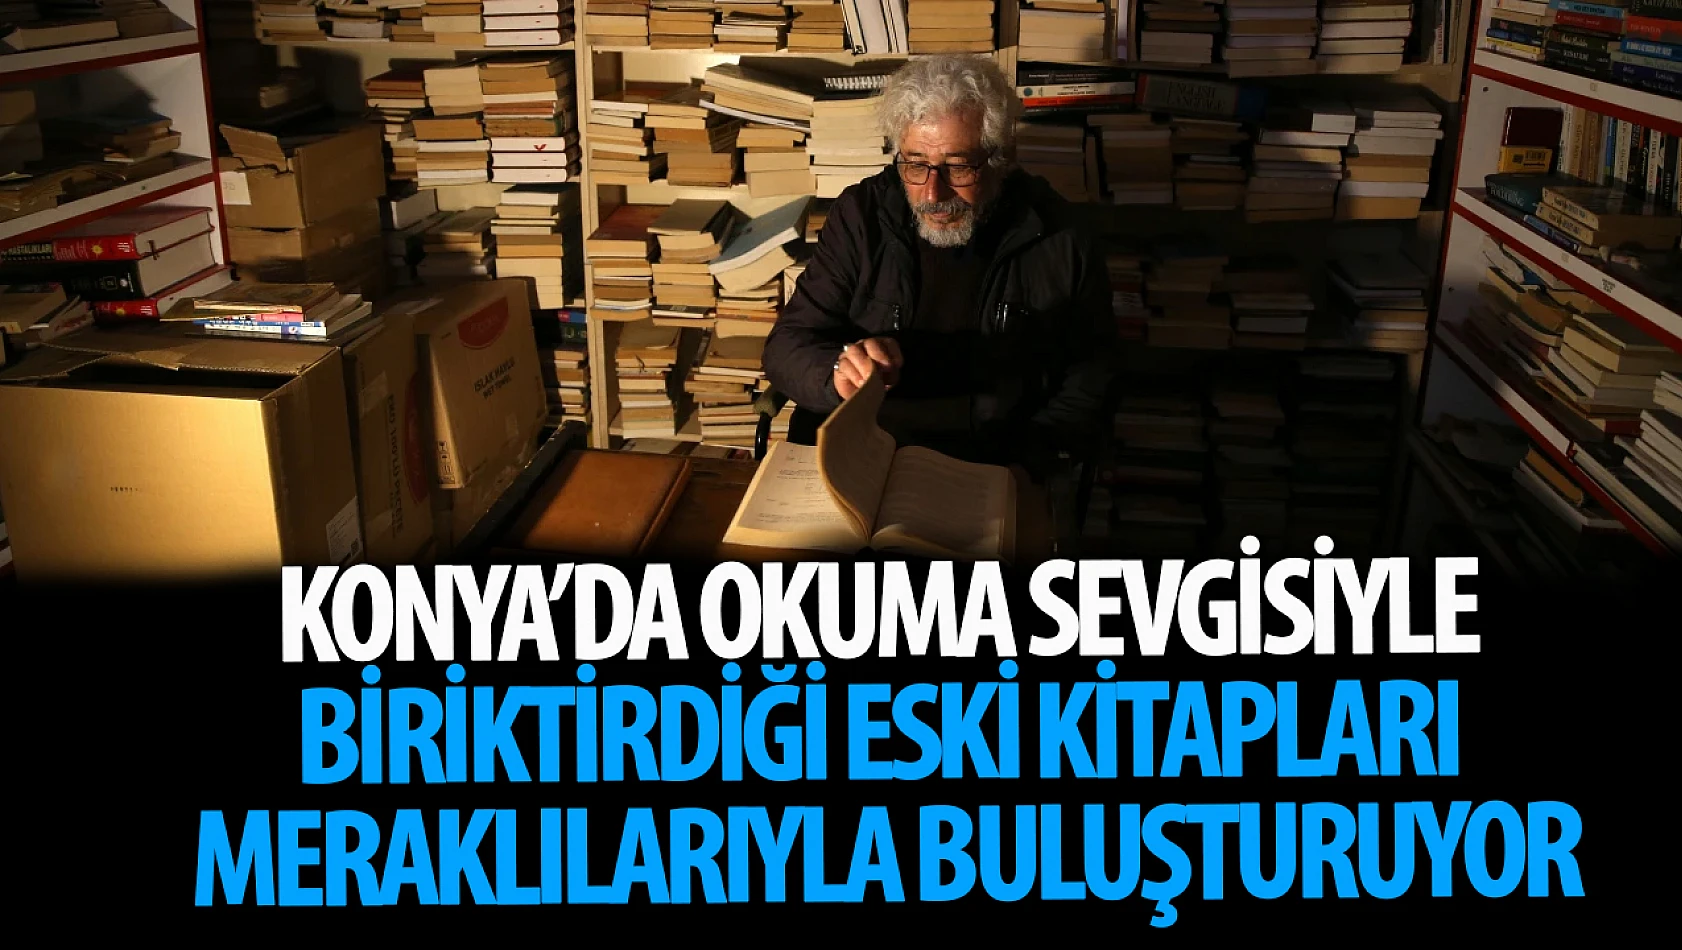 Konya'da okuma sevgisiyle biriktirdiği eski kitapları meraklılarıyla buluşturuyor!